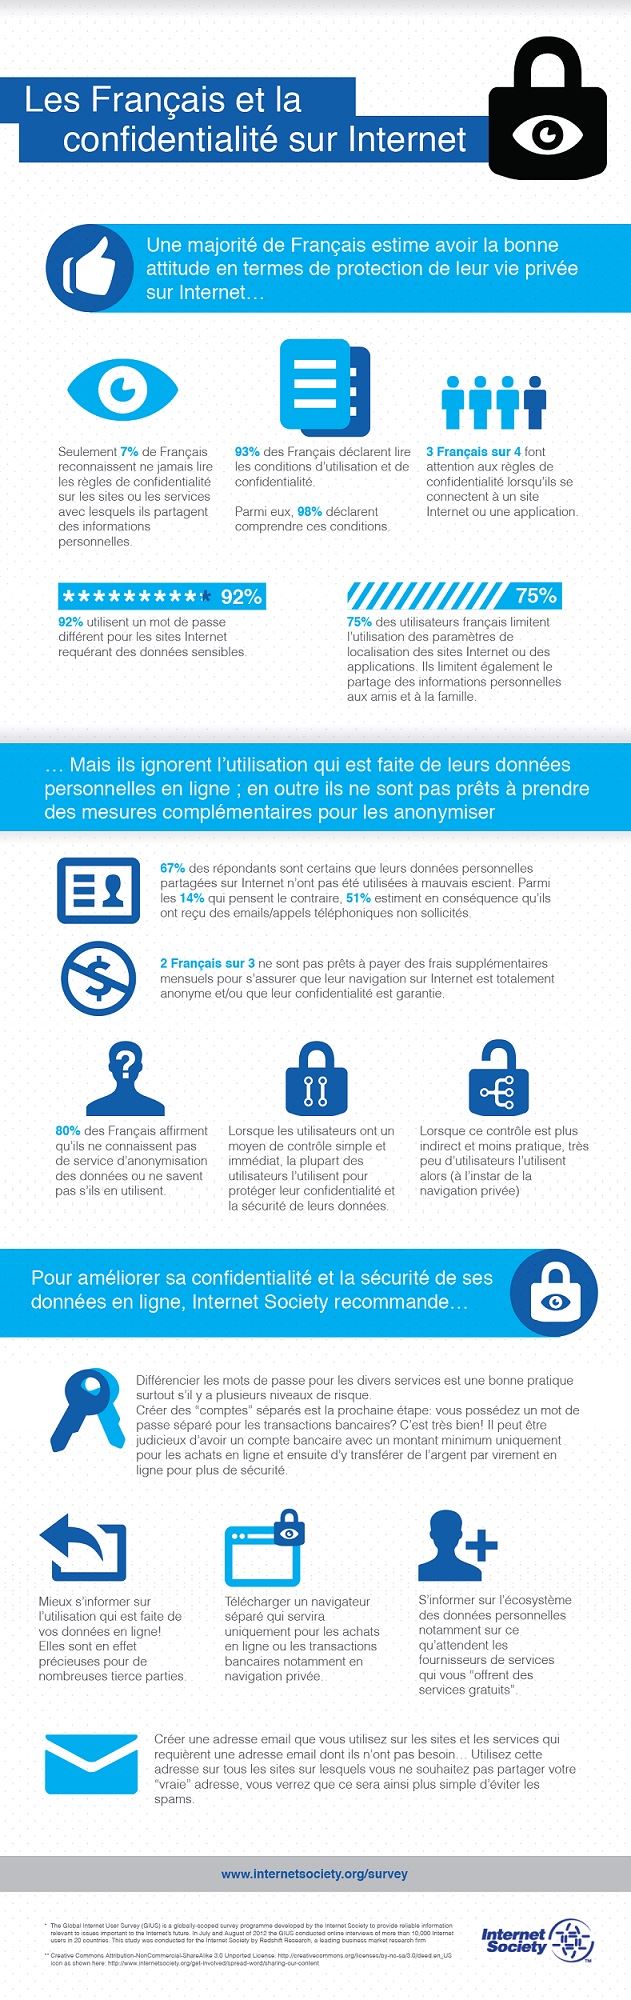 Infographie Int​ernet Society - Les Français et la confidenti​alité sur Internet